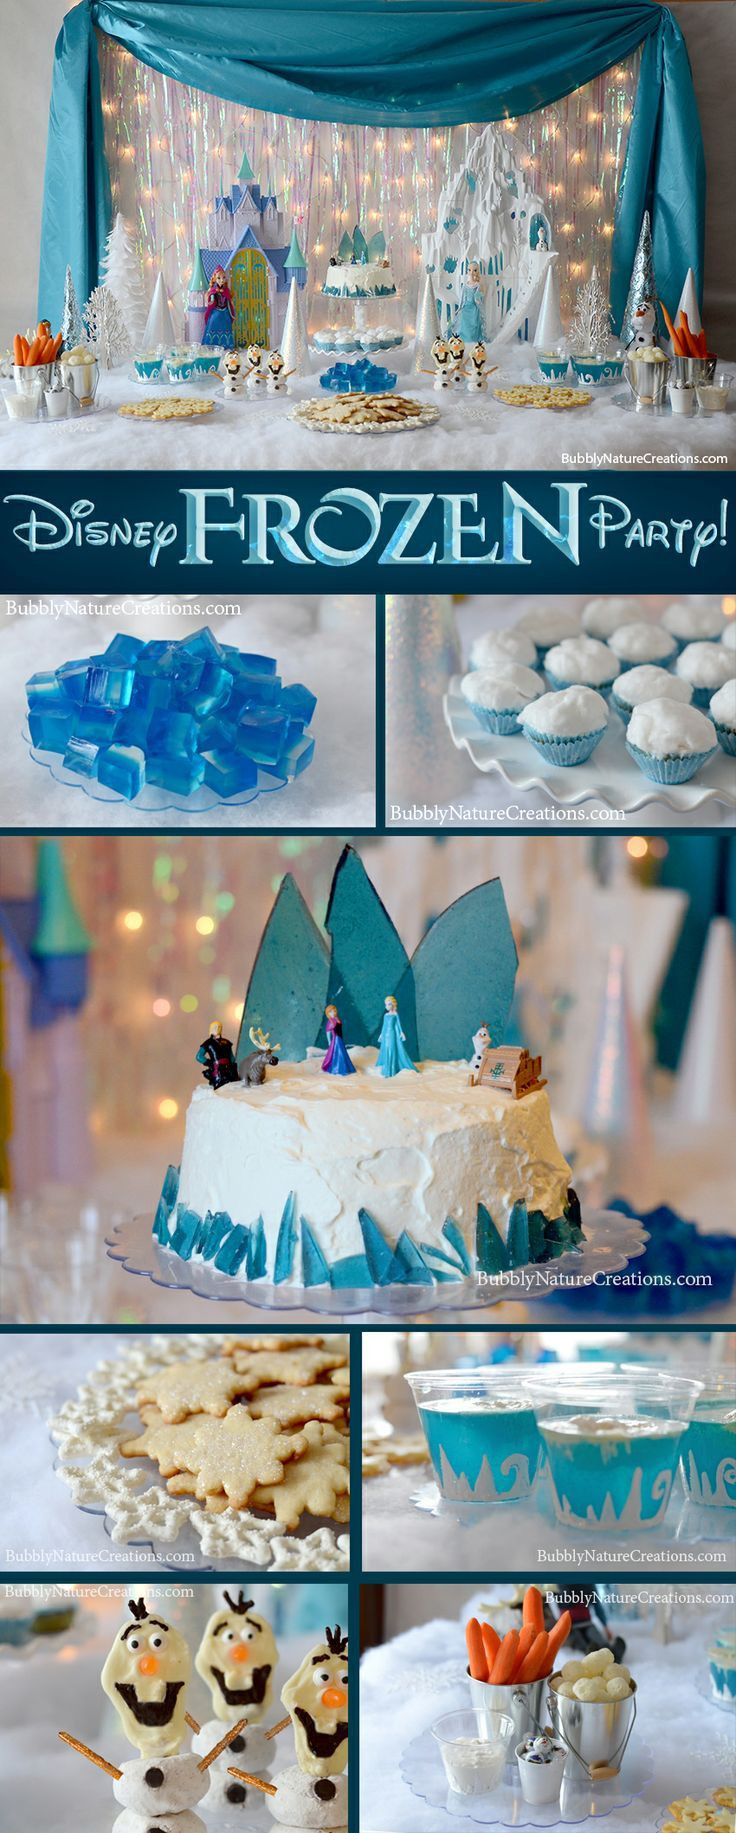 Frozen Birthday Party Theme
 Disney Frozen Birthday Party Theme